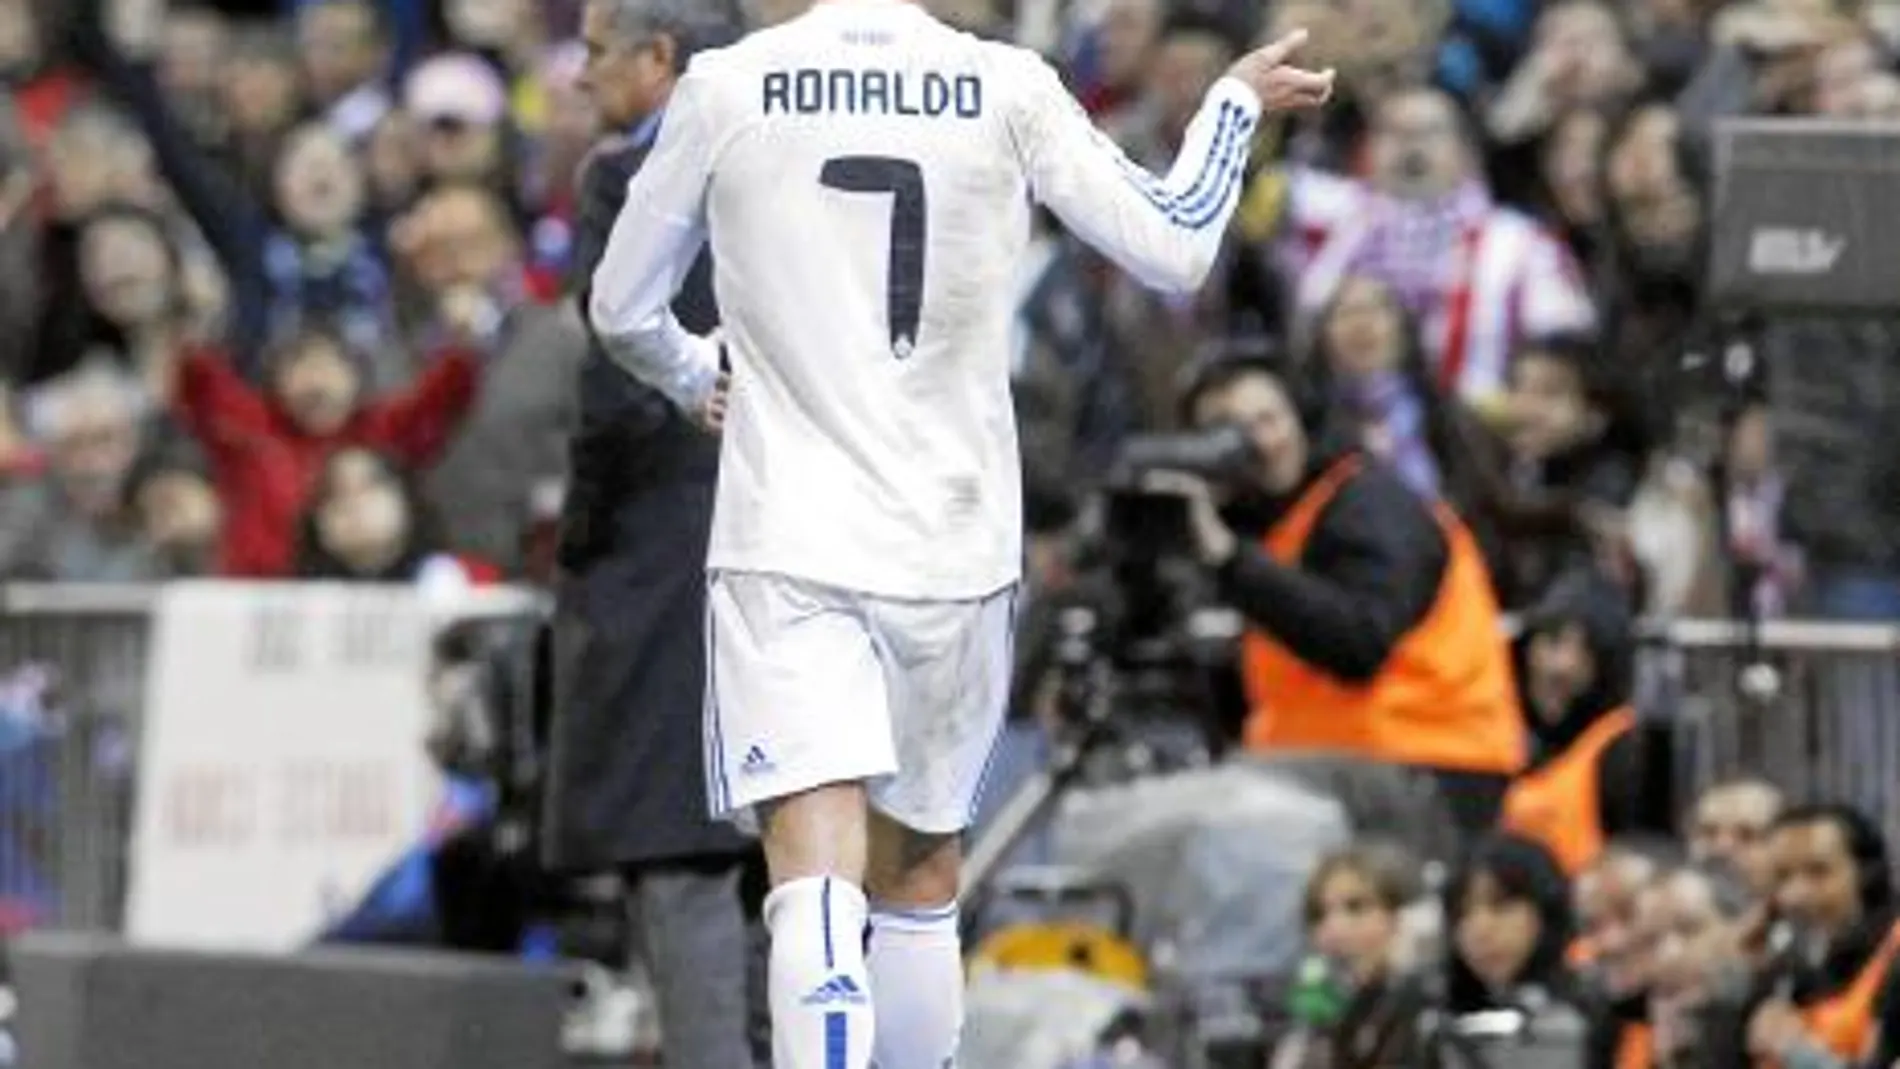 Mientras se dirige al banquillo tras ser sustituido, Cristiano Ronaldo hace gestos al público, que le despidió con insultos